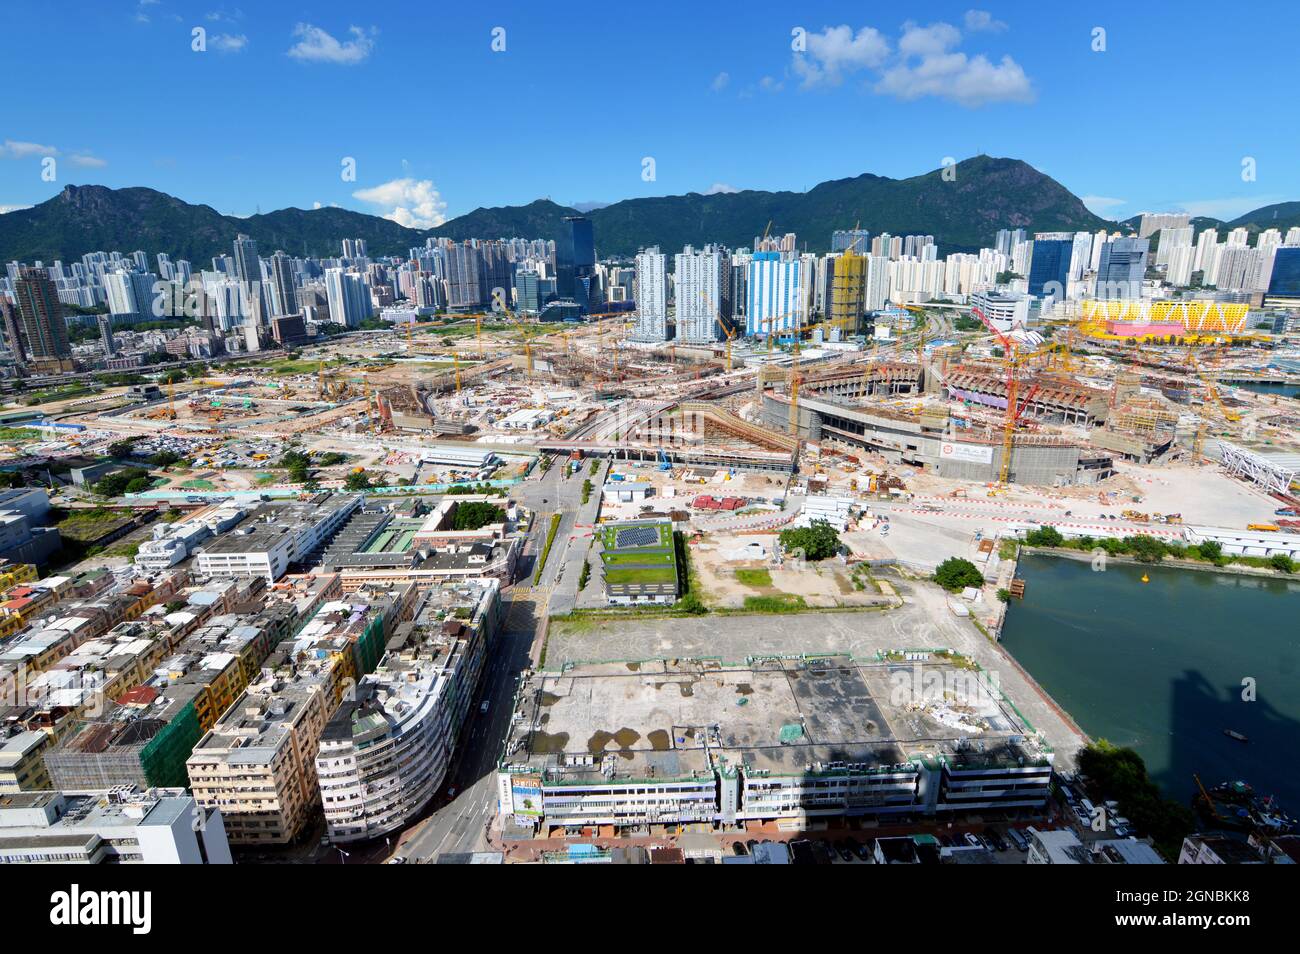 Vista della costruzione del Kai Tak Sports Park presso l'area di sviluppo di Kai Tak (啟德發展計劃), (ex sito dell'aeroporto di Hong Kong Kai Tak), nel settembre 2021 Foto Stock